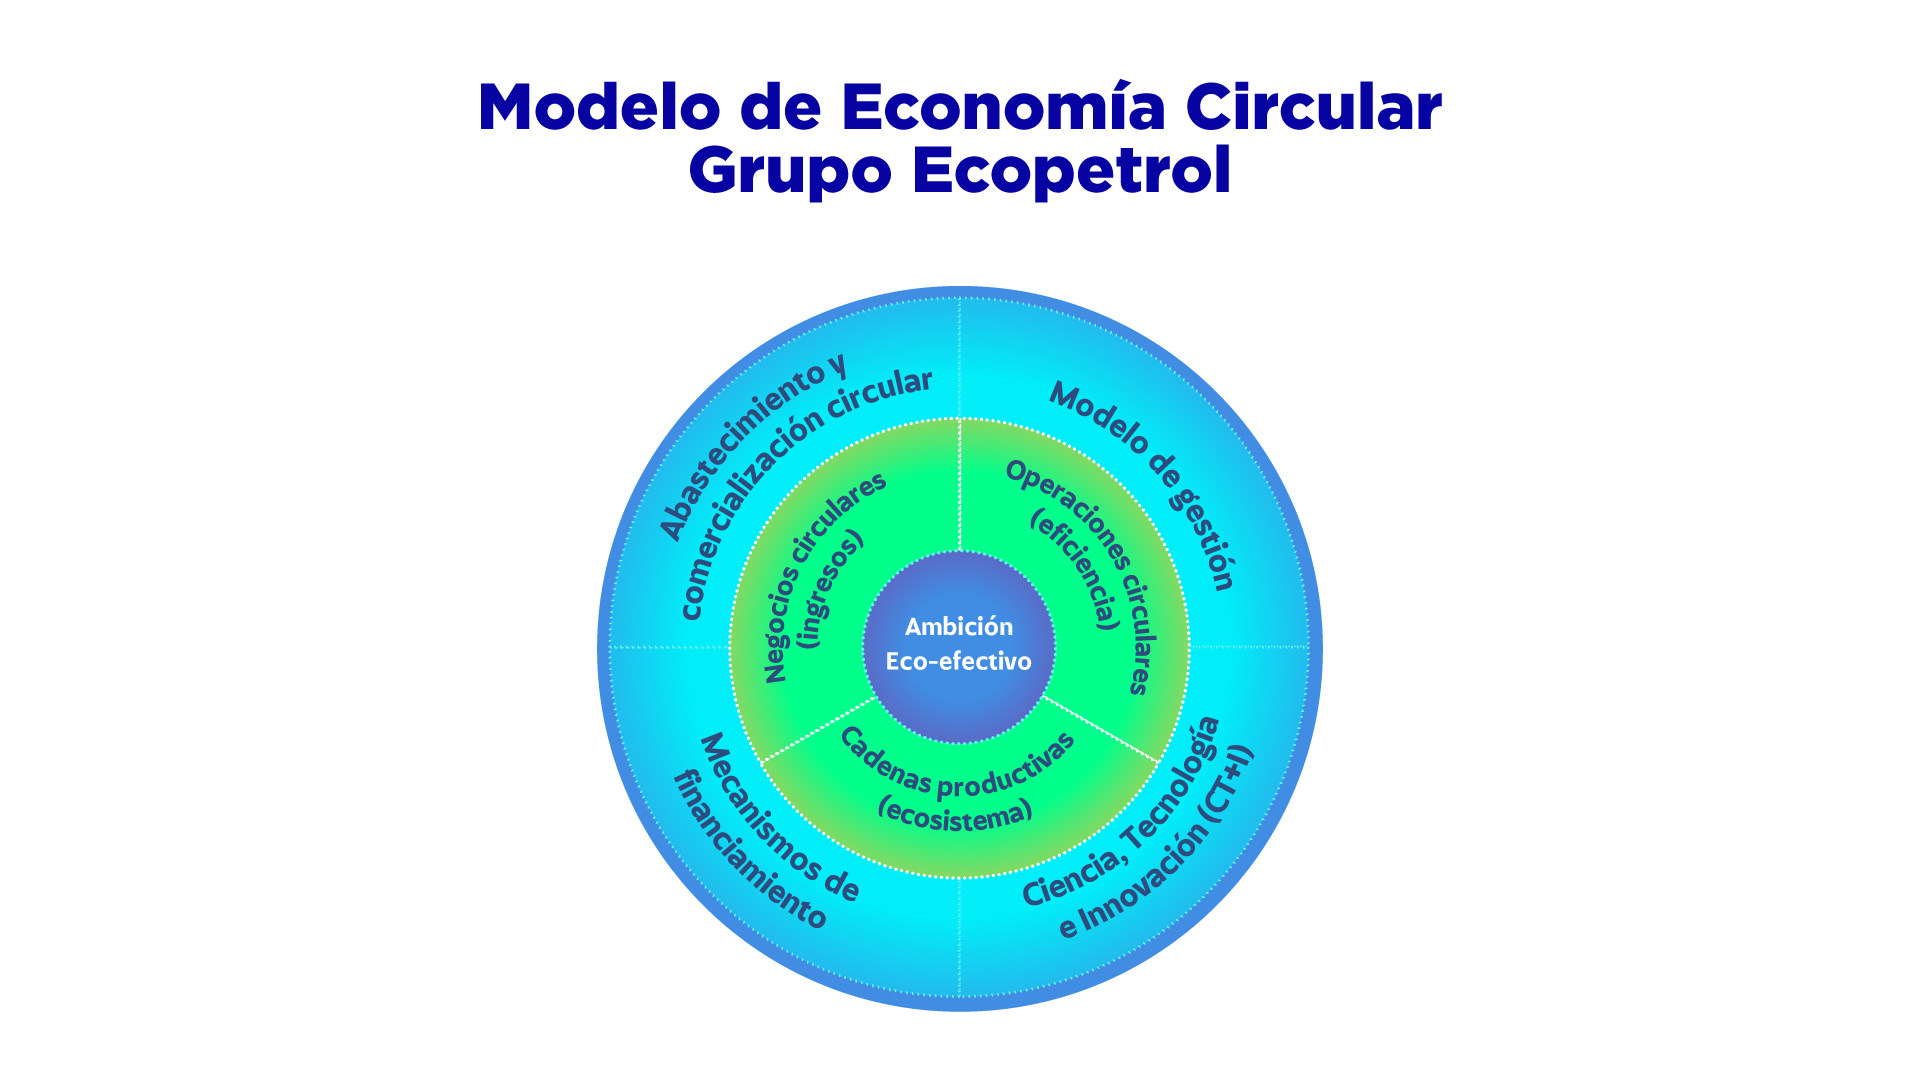 Modelo de Economía Circular Grupo Ecopetrol